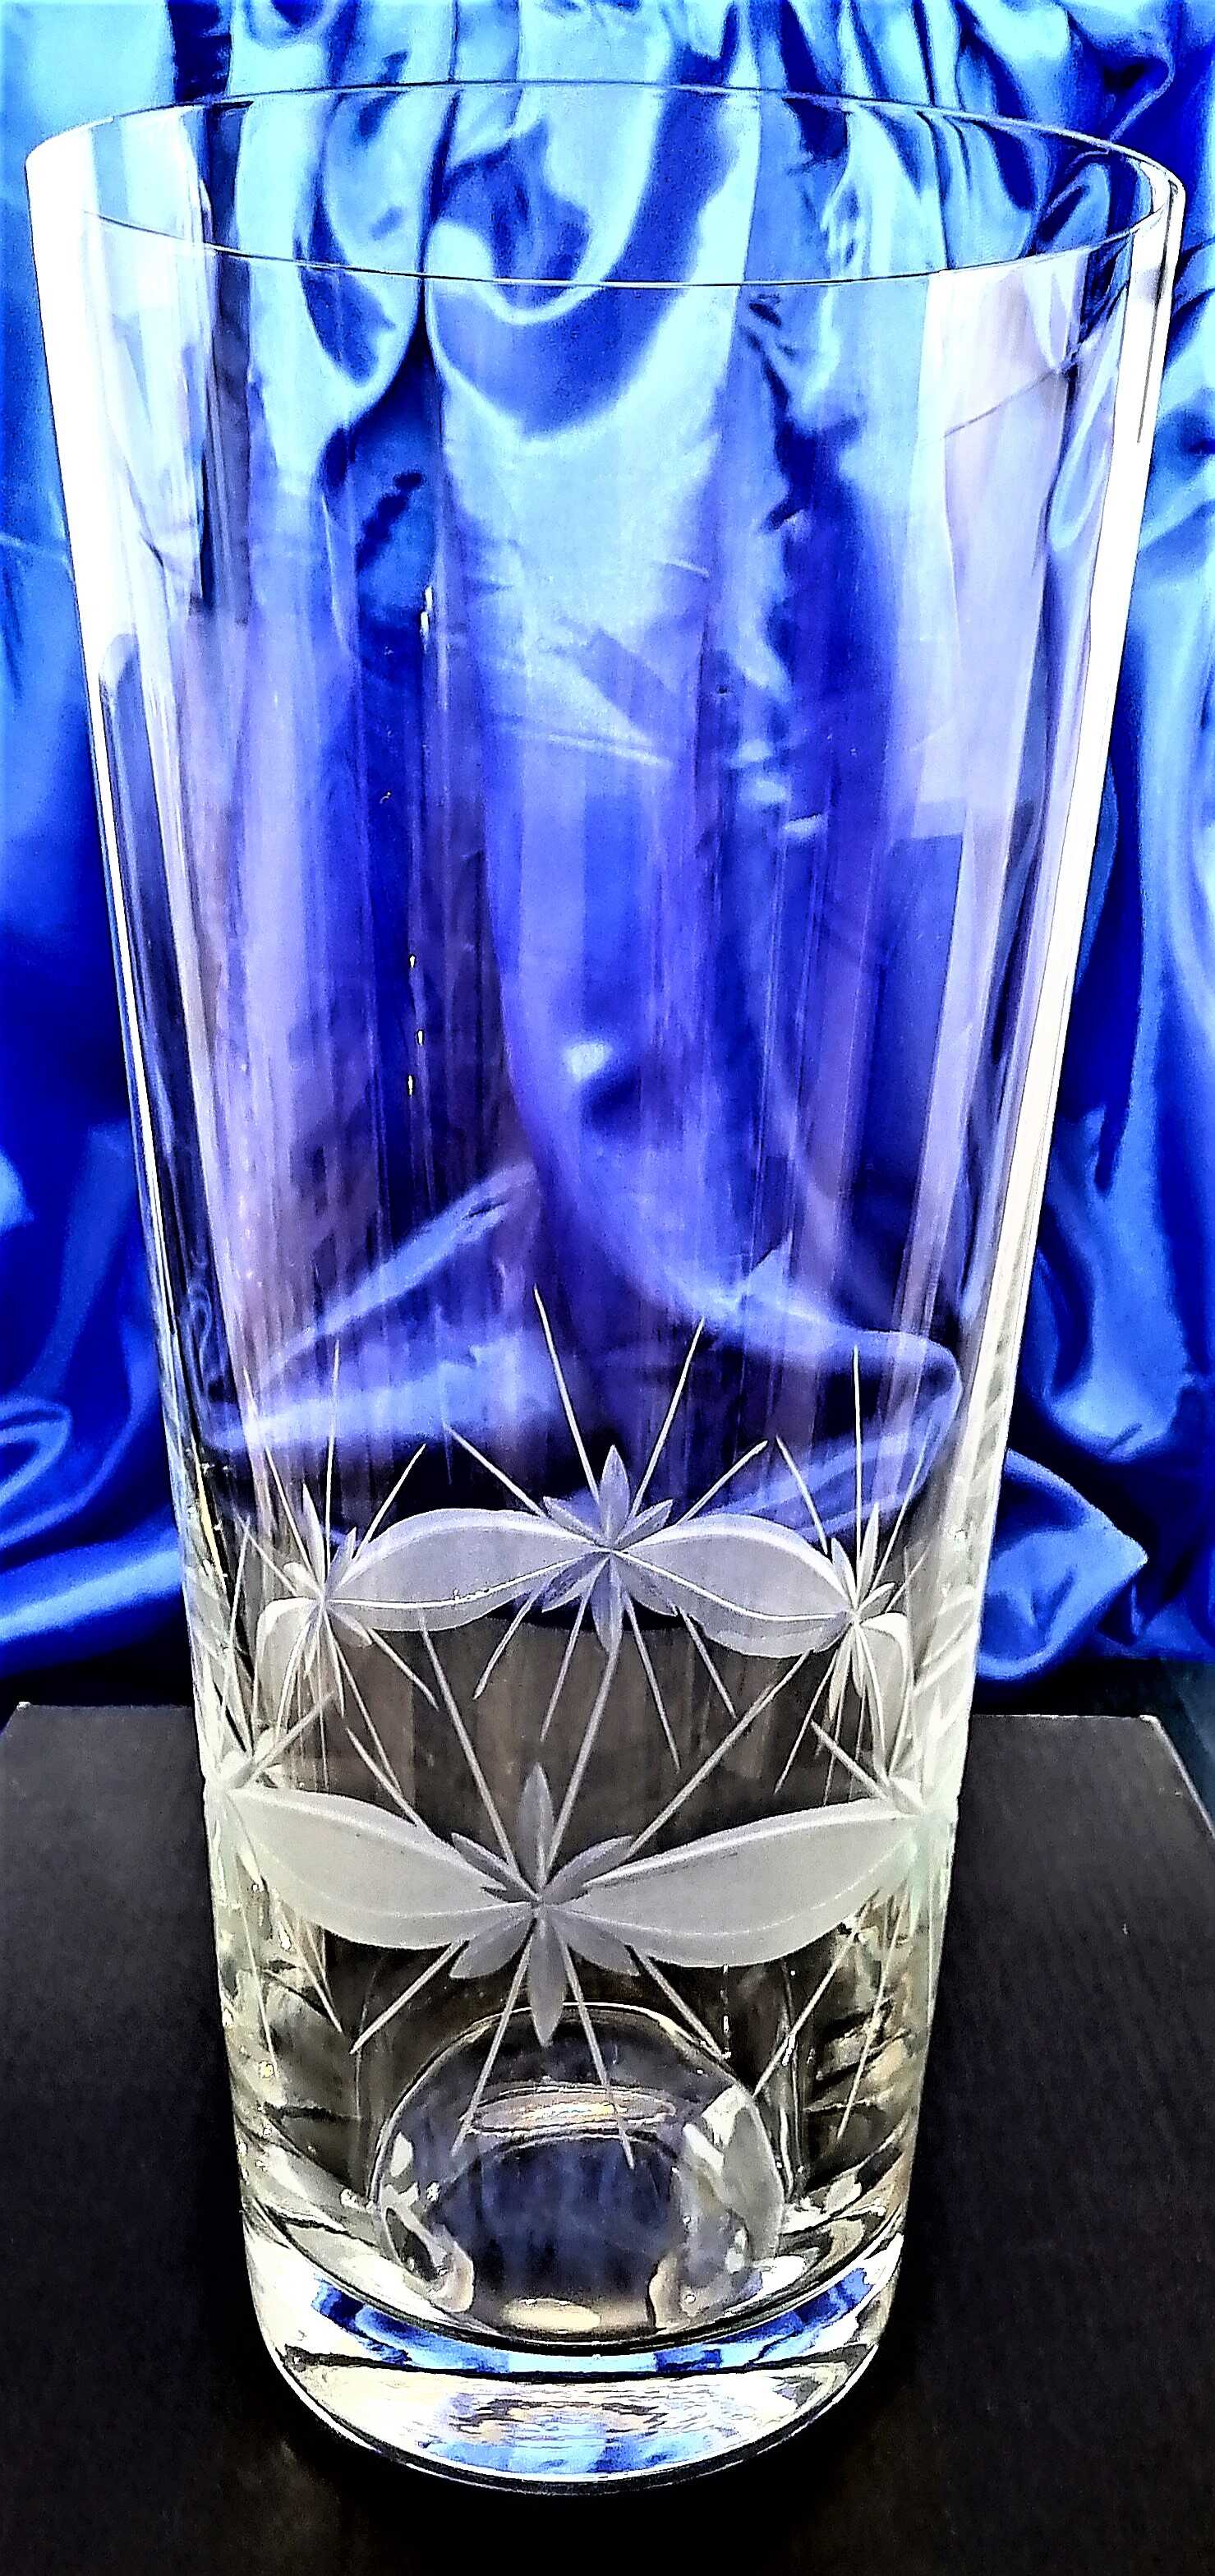 LsG-kristall Vase Hand geschliffen Kristallglas Kante WA-137 250 x 125 mm 1 Stück .